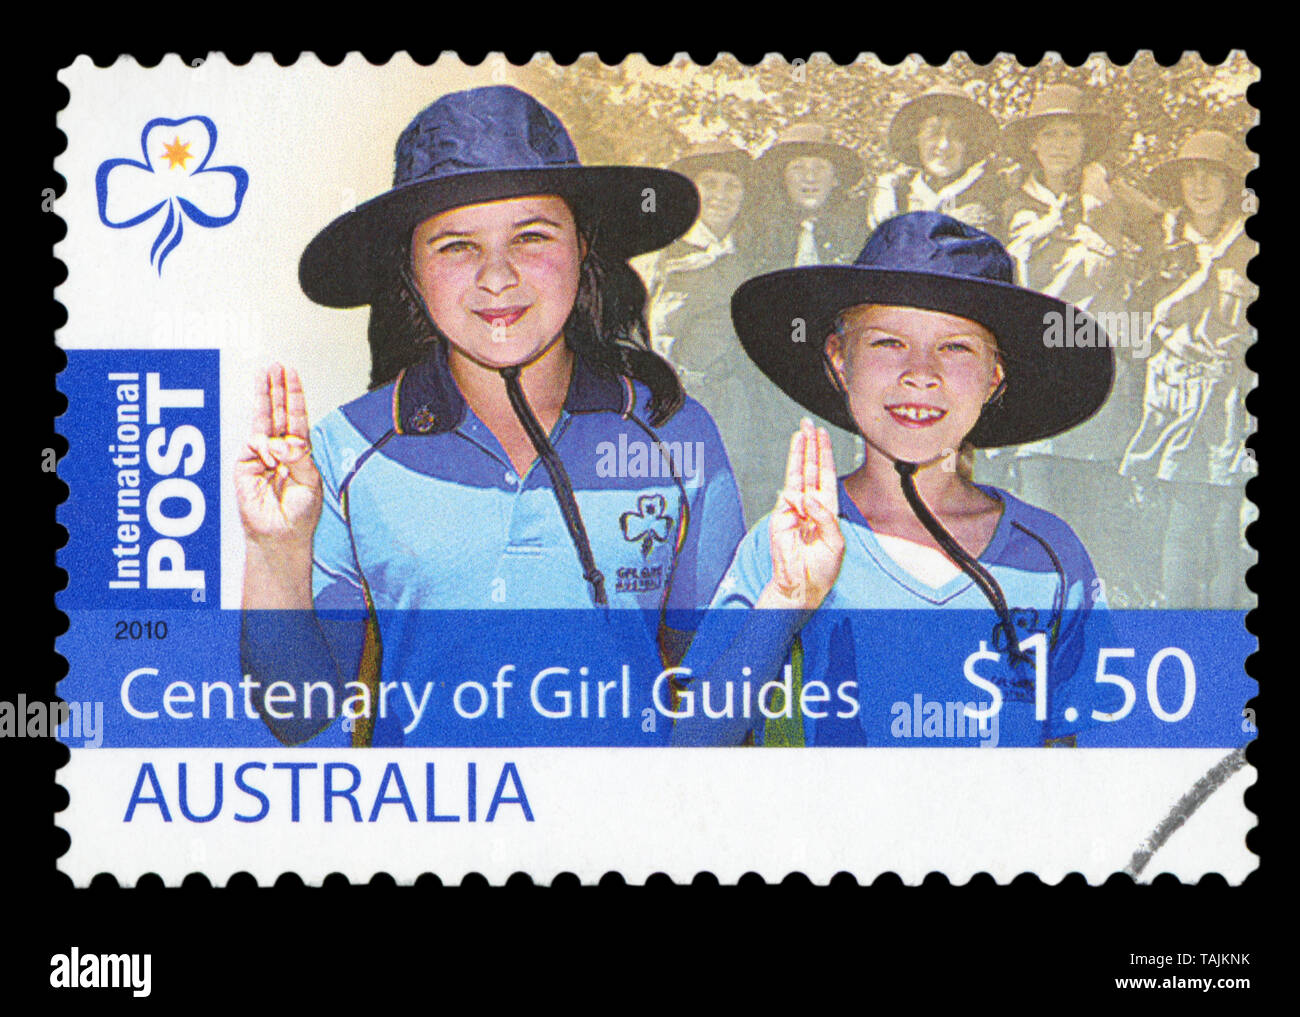 AUSTRALIA - circa 2010: utilizzate un francobollo da Australia, commemorando il centenario della Girl Guides, circa 2010. Foto Stock